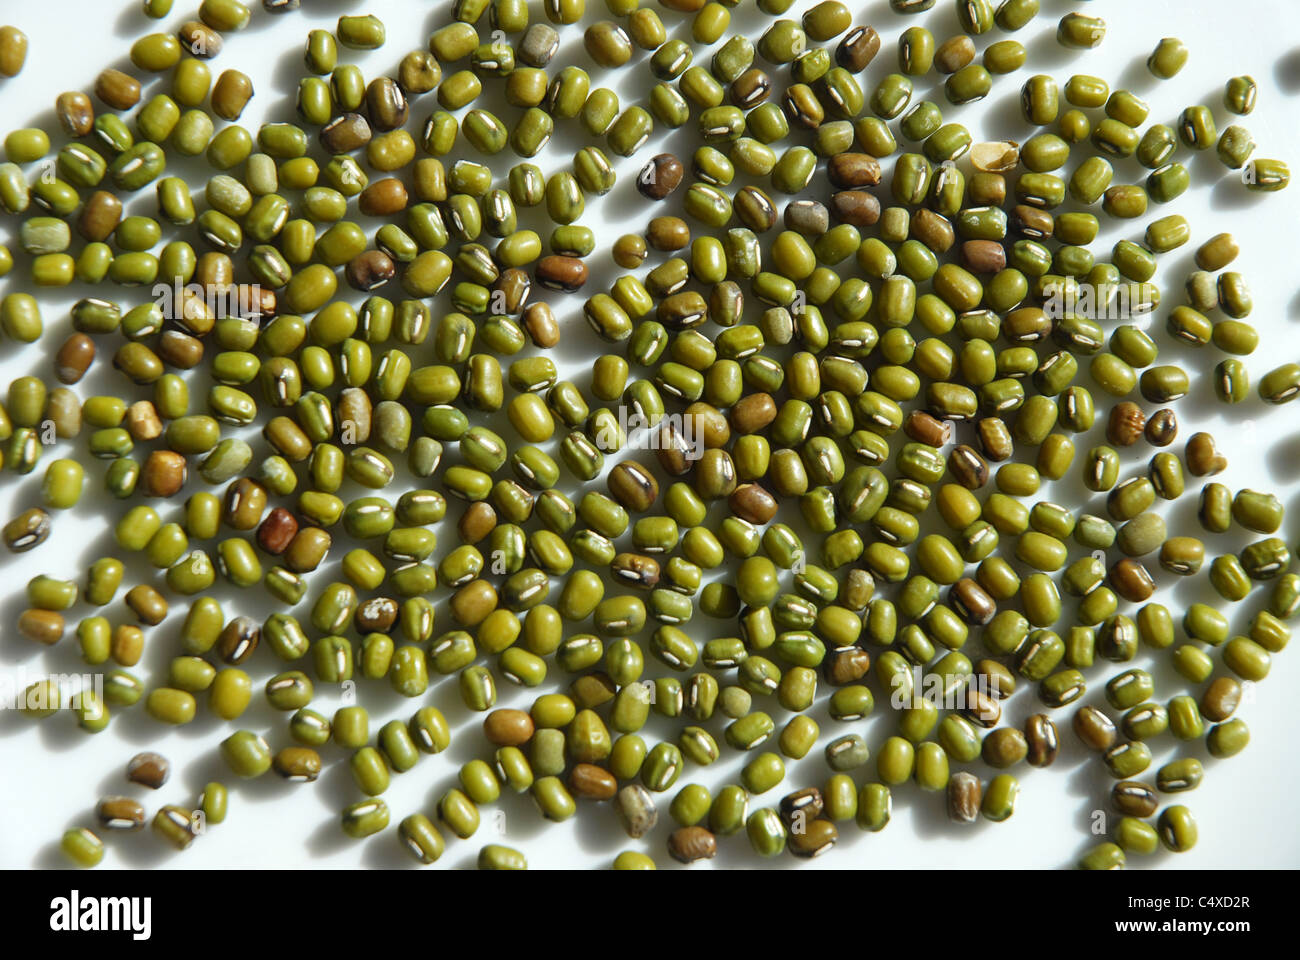 mung bean seeds Stock Photo